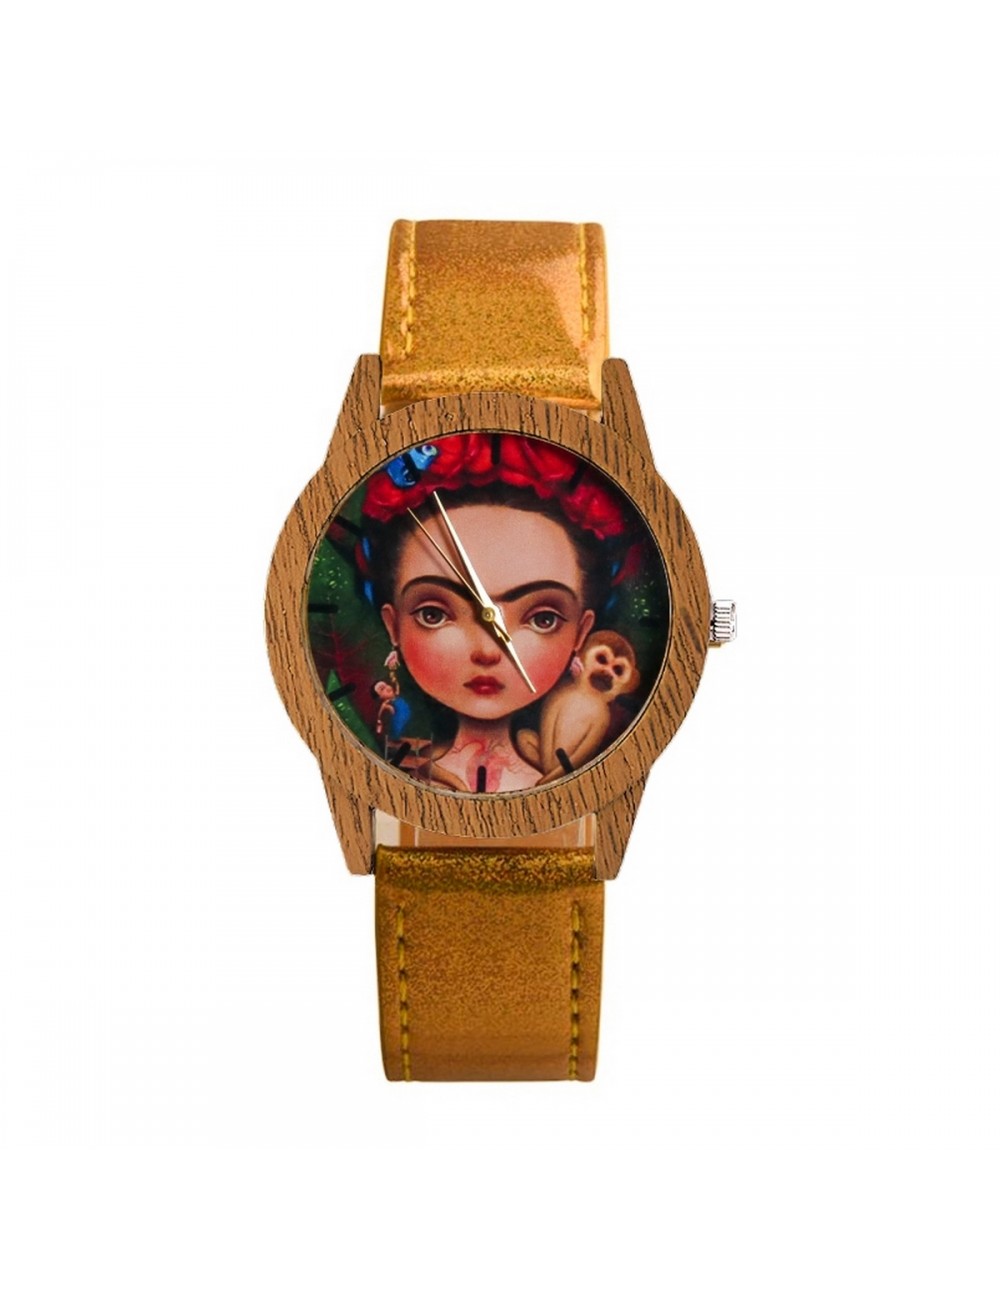 Reloj Frida Dayoshop 41,900.00